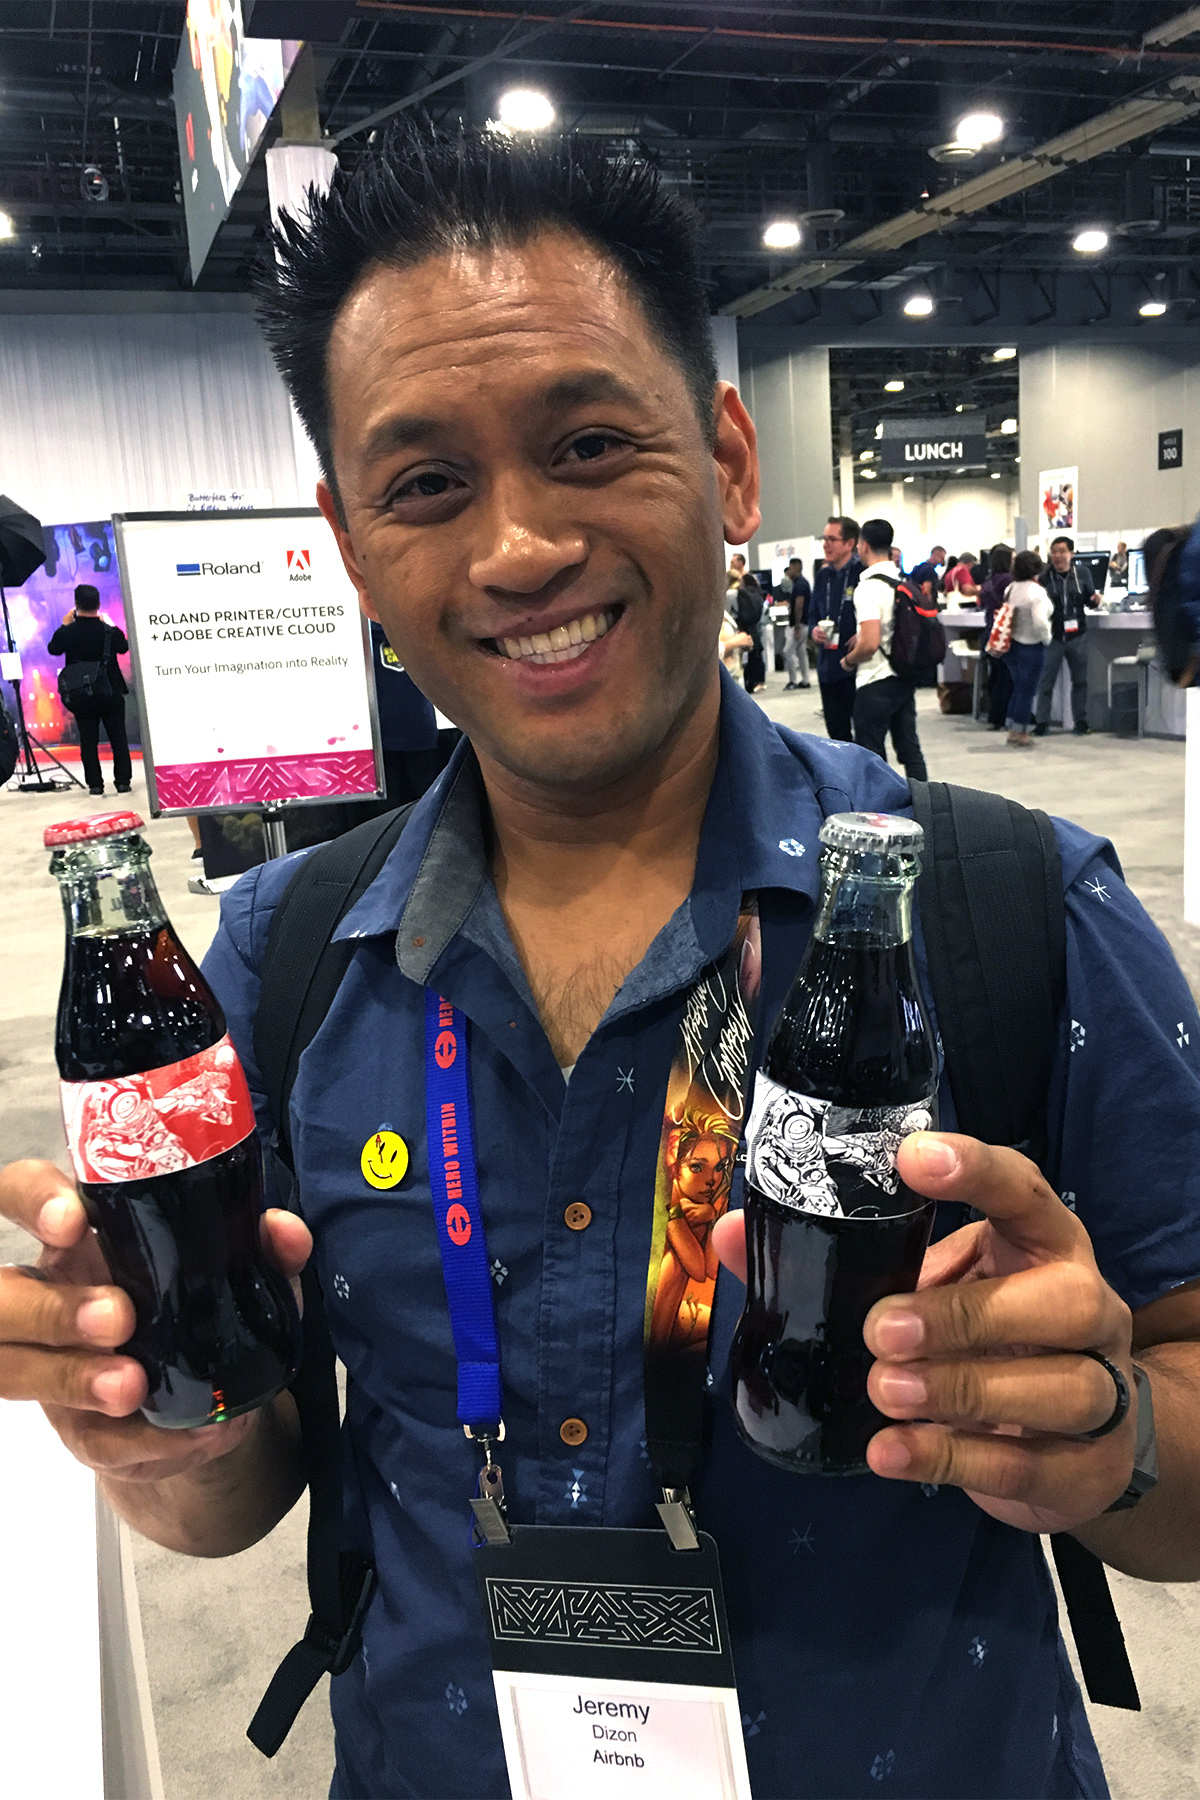 Jeremy Dizon, asistente a la conferencia Adobe MAX, muestra sus etiquetas de Coca-Cola personalizadas, impresas en una impresora/cortadora de la serie Roland DG VG